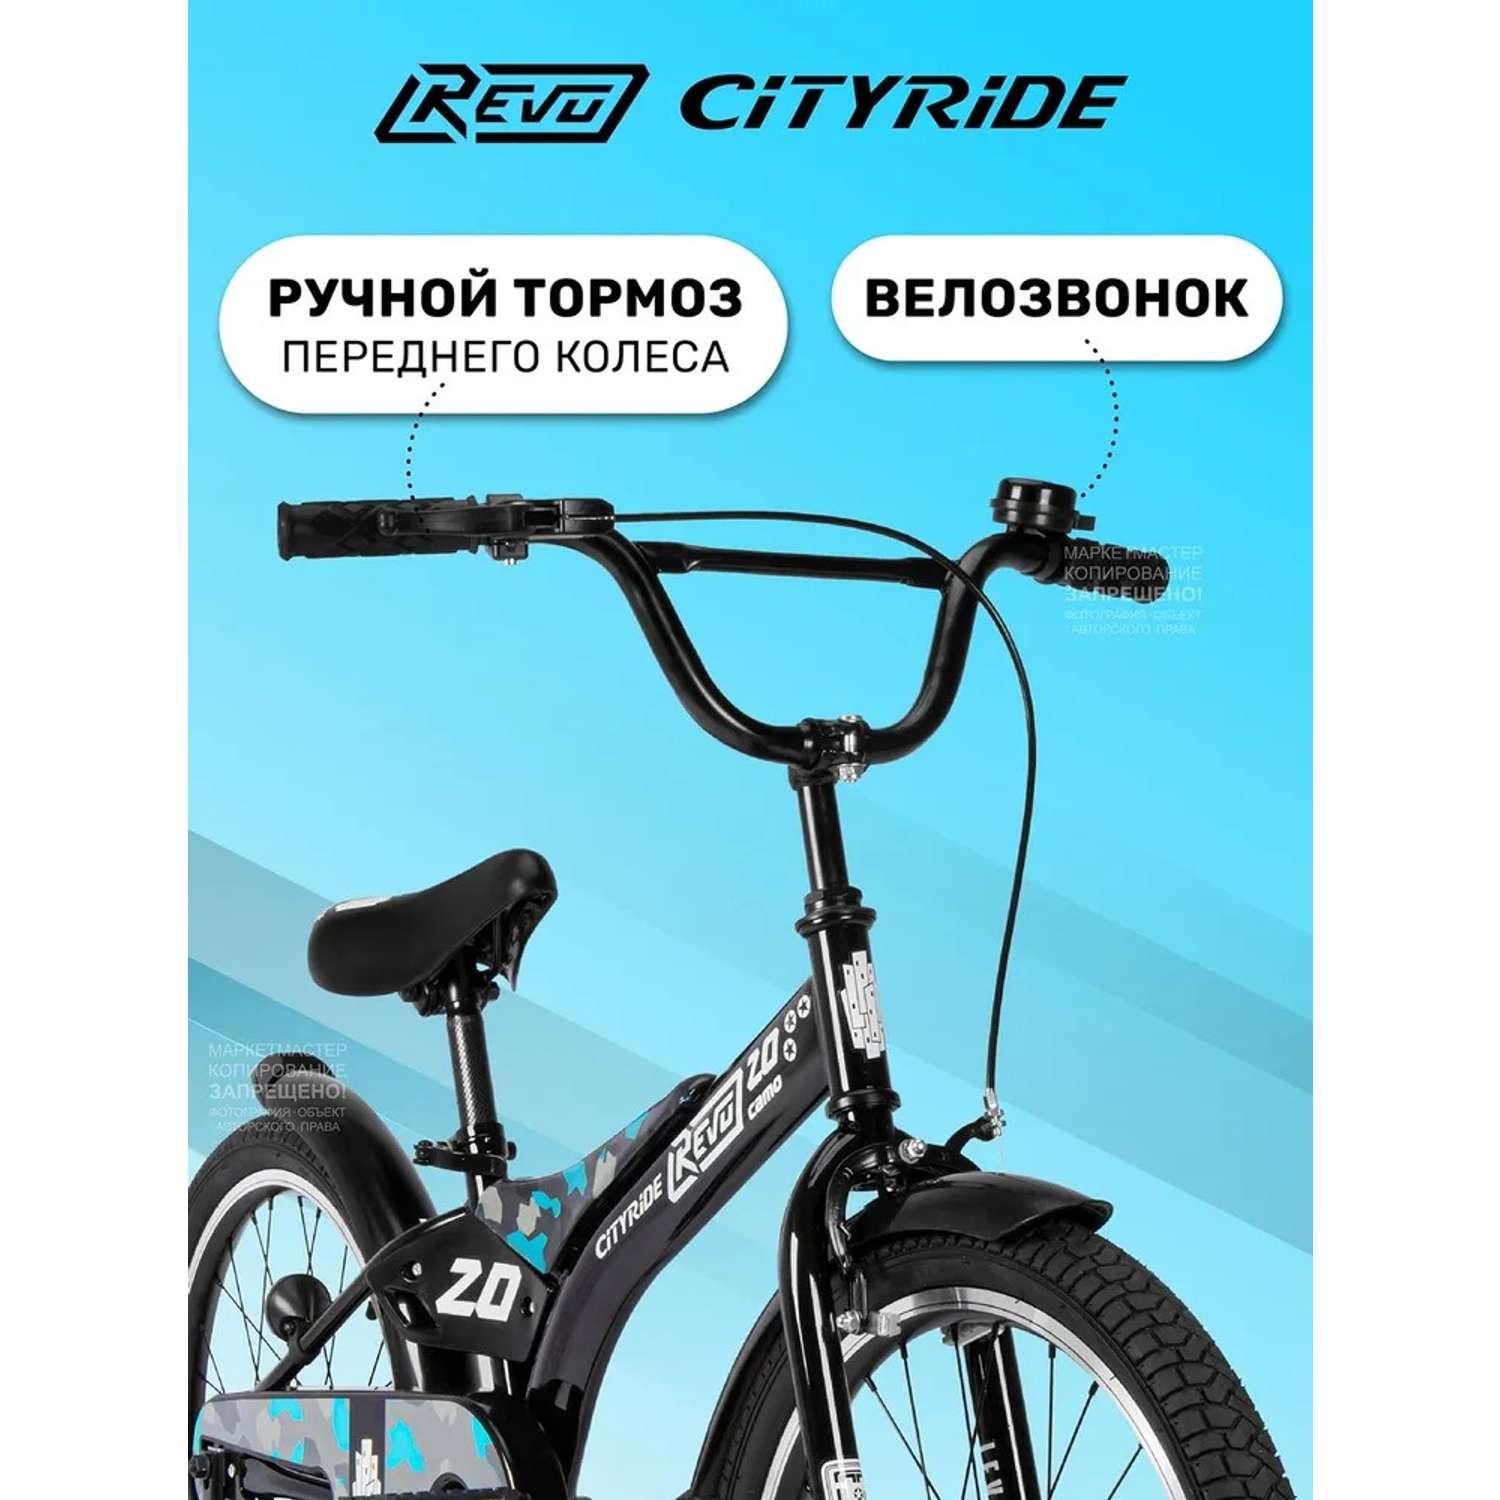 Детский велосипед CITYRIDE Двухколесный Cityride REVO Рама сталь Кожух цепи 100% Диски алюминий 20 Втулки сталь - фото 3